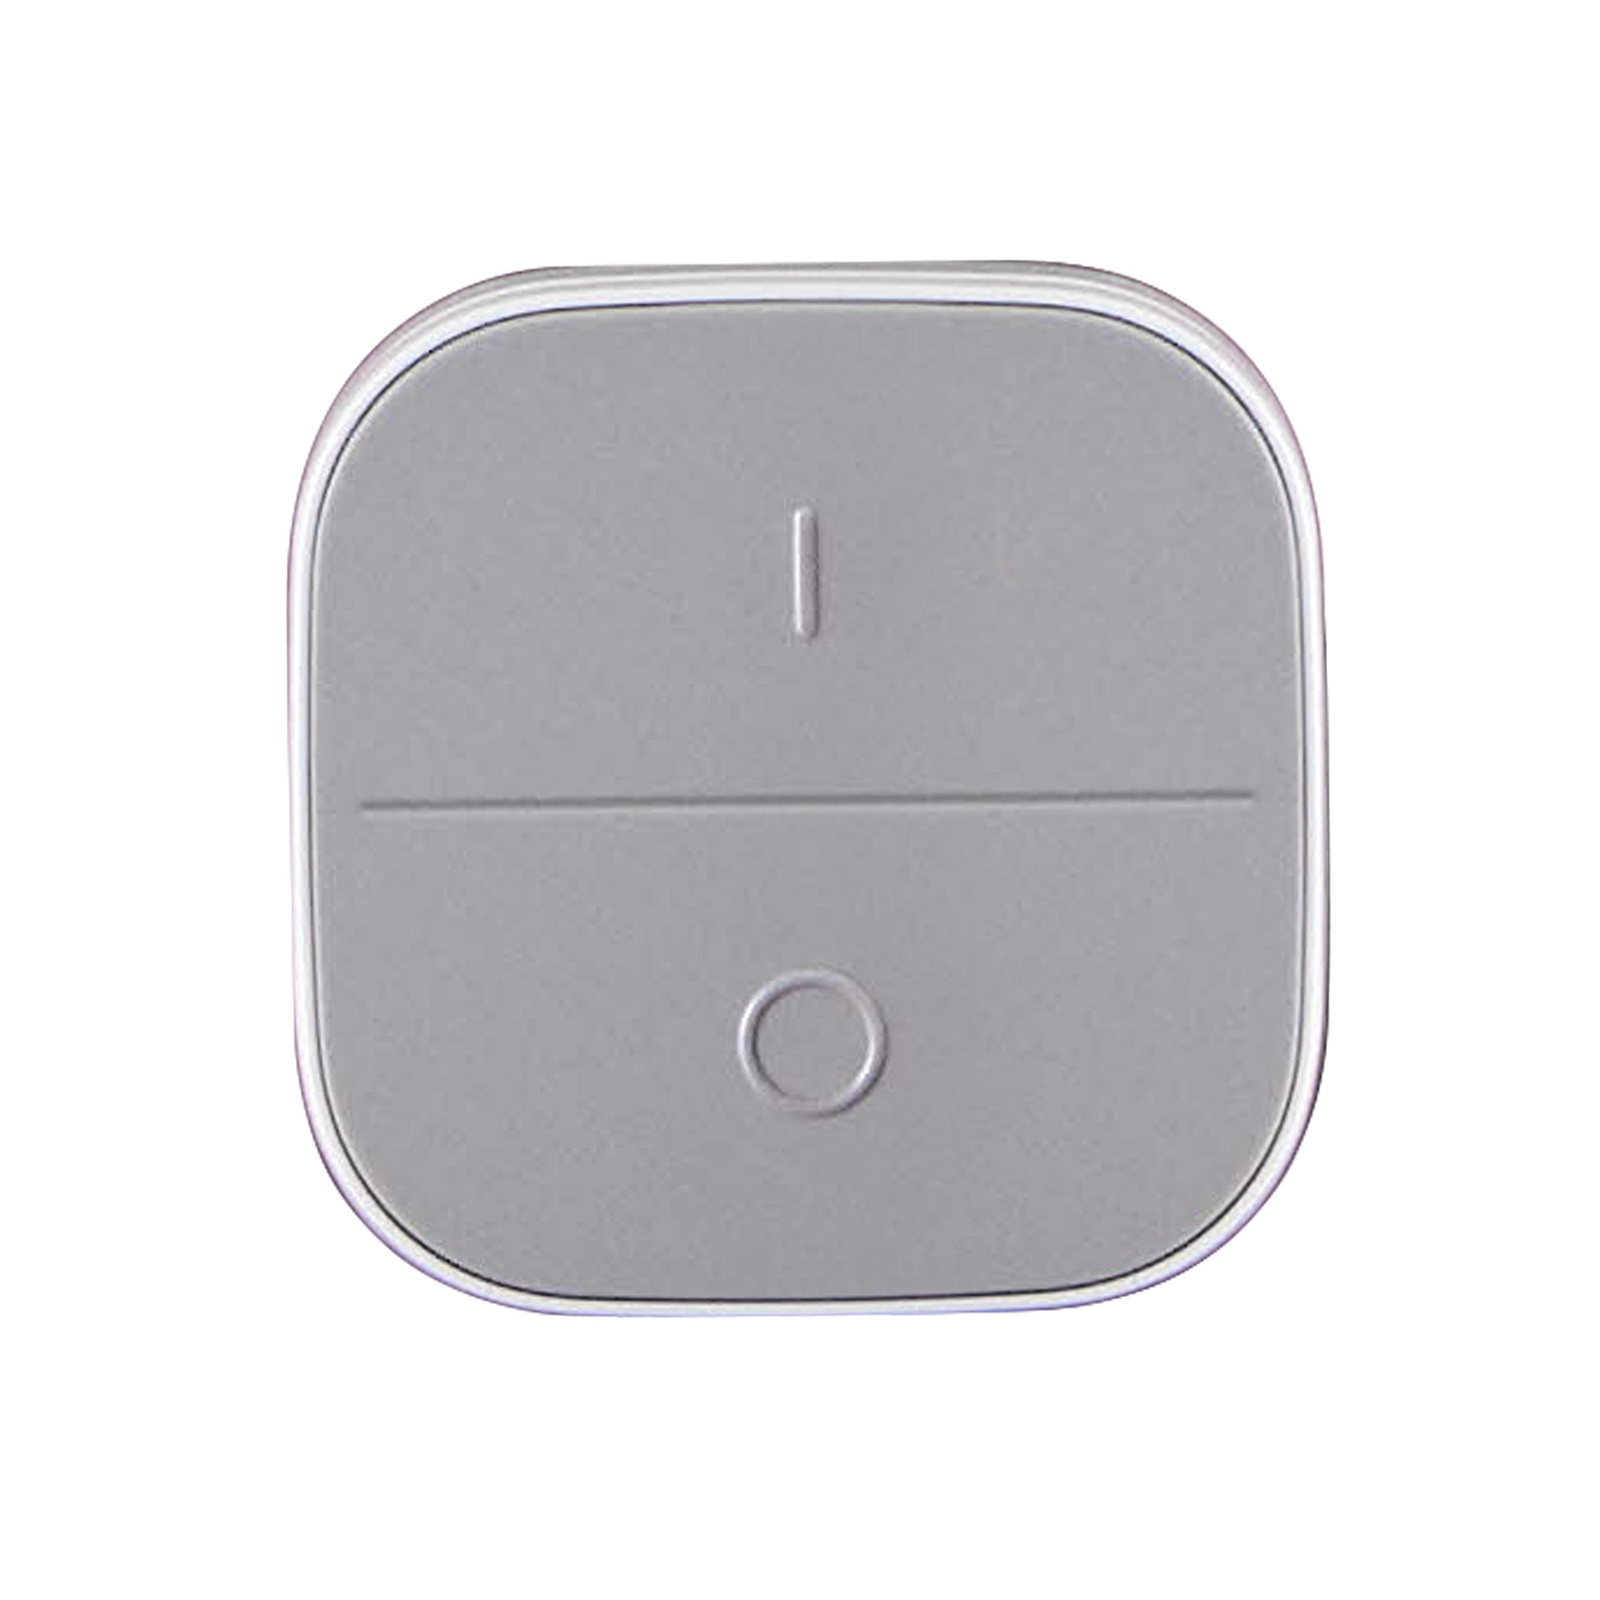 WiZ Portable Button mobilny przełącznik ścienny